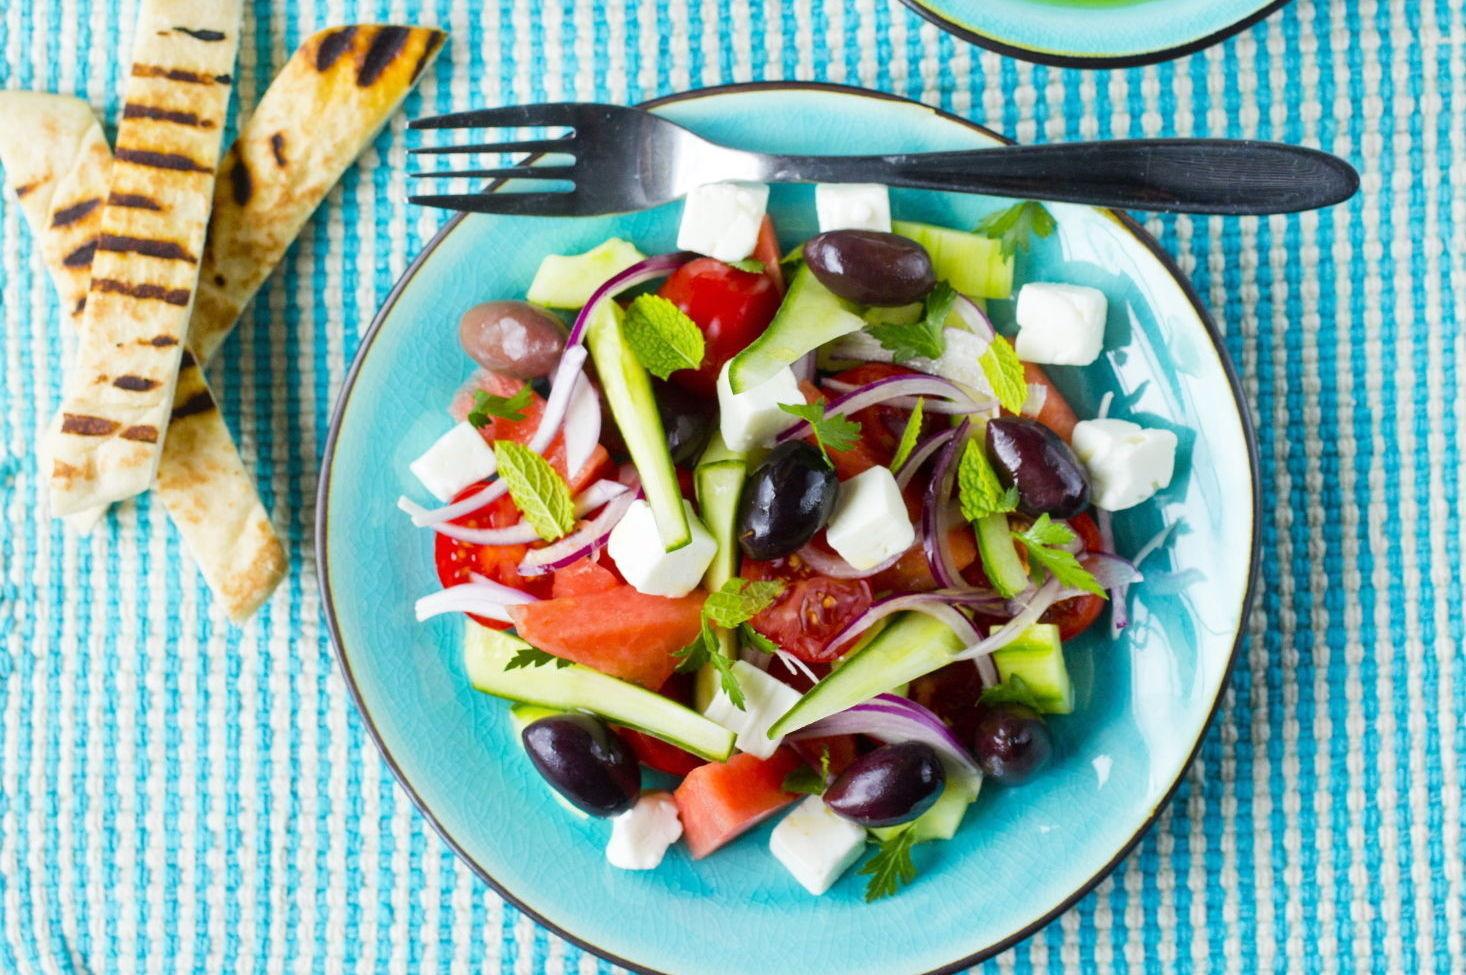 SMAKEN AV FERIE: Gresk salat med vannmelon, fetaost og oliven forlenger feriefølelsen. Foto: Sara Johannessen/VG